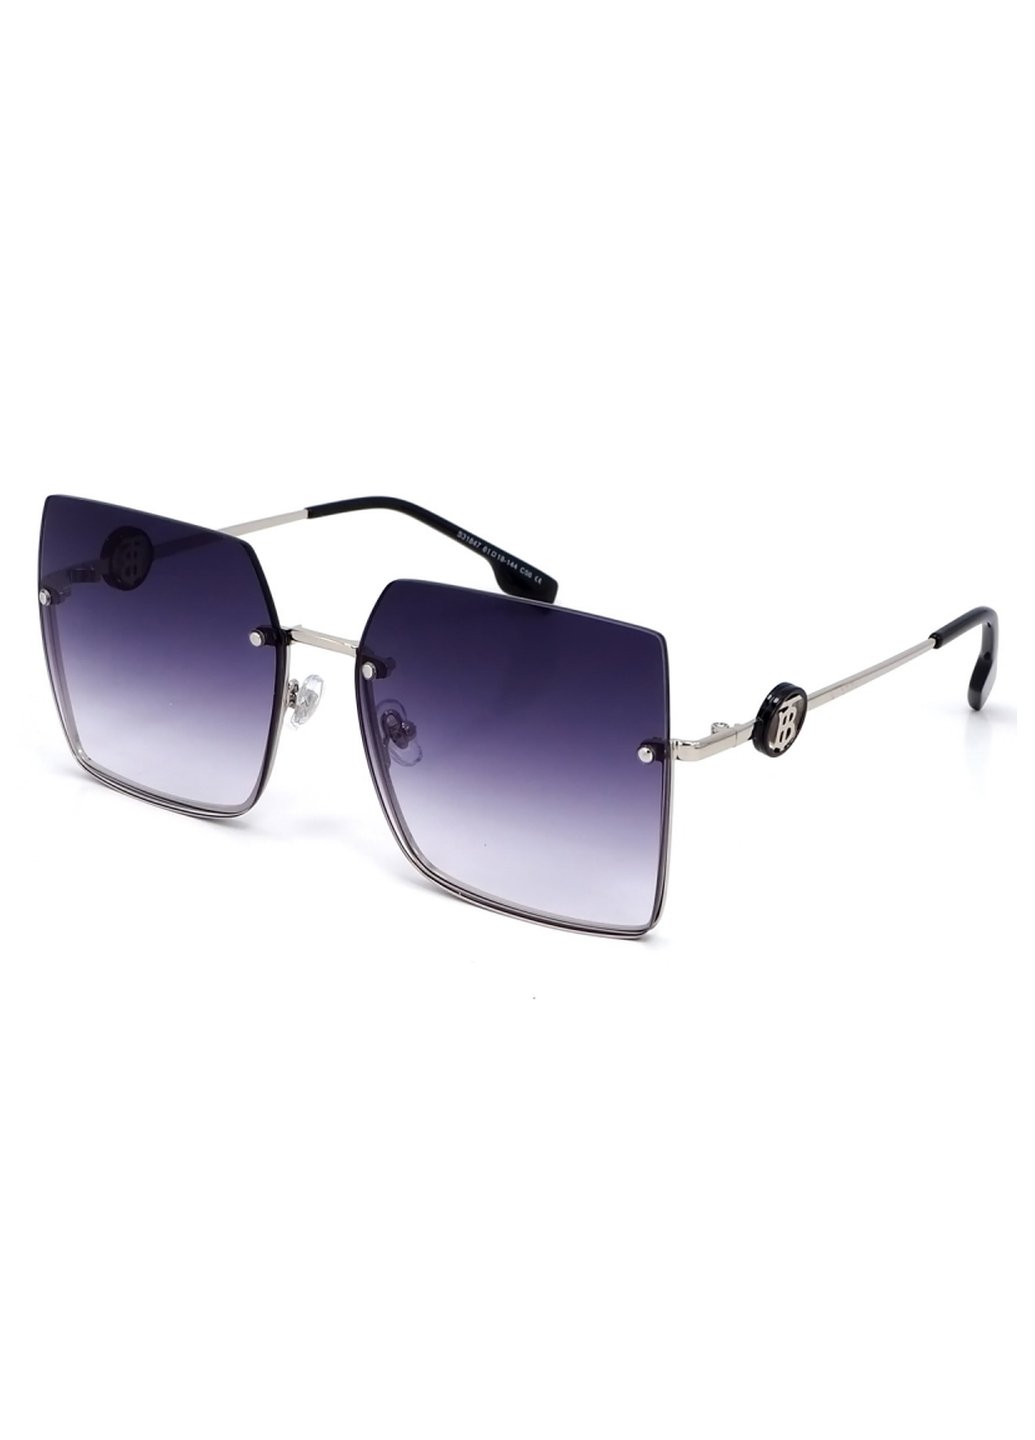 Купить Женские солнцезащитные очки Merlini с поляризацией S31847 117118 - Серый в интернет-магазине